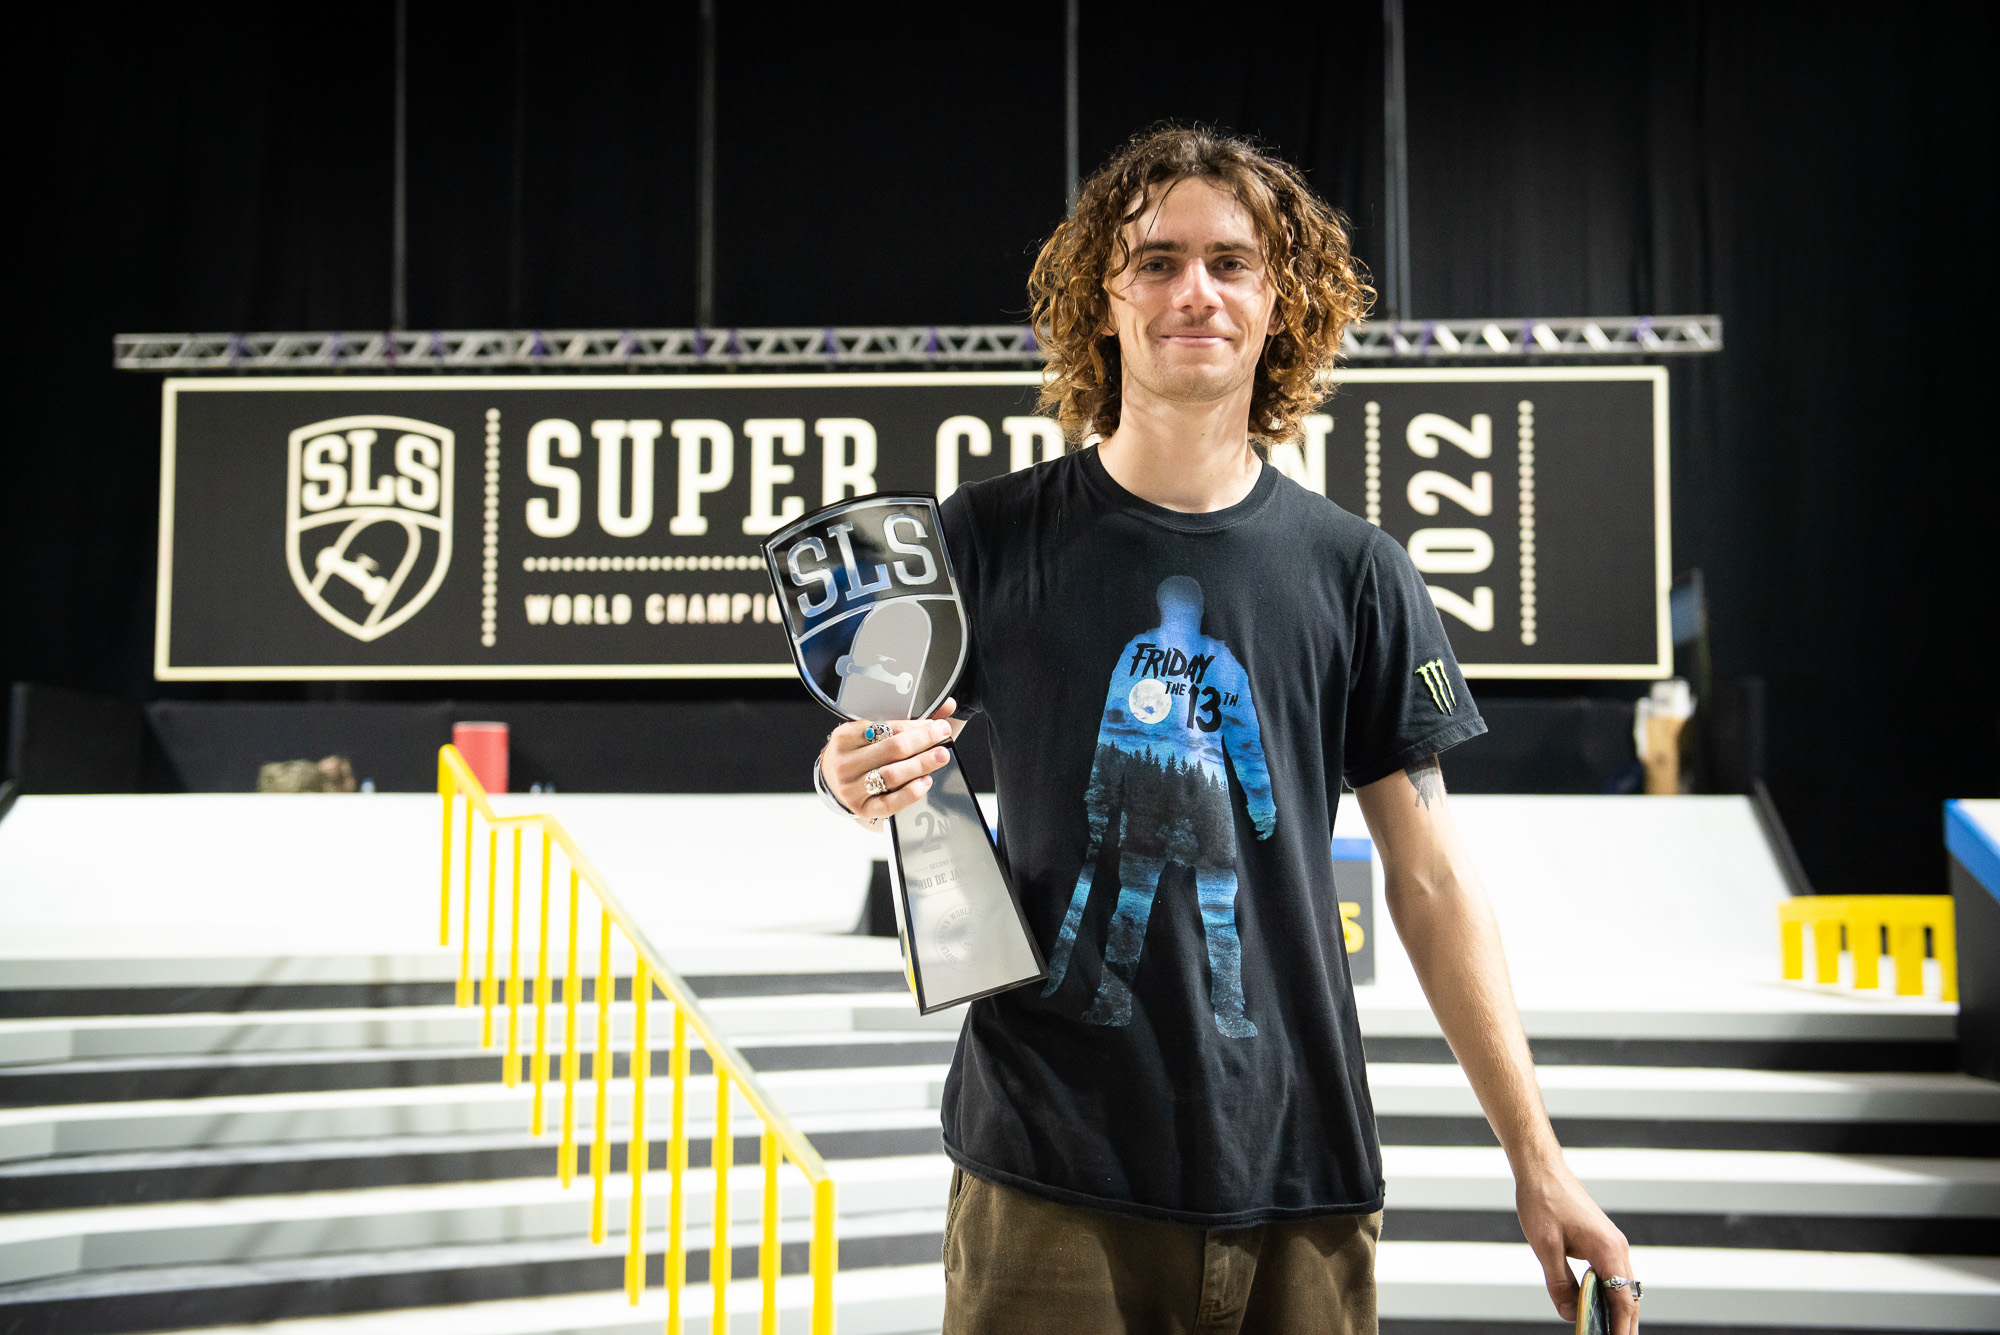 Monster Energy's Braden Hoban Takes Second Place in Men’s Street Skateboarding at Street League Skateboarding (SLS) in Rio de Janeiro